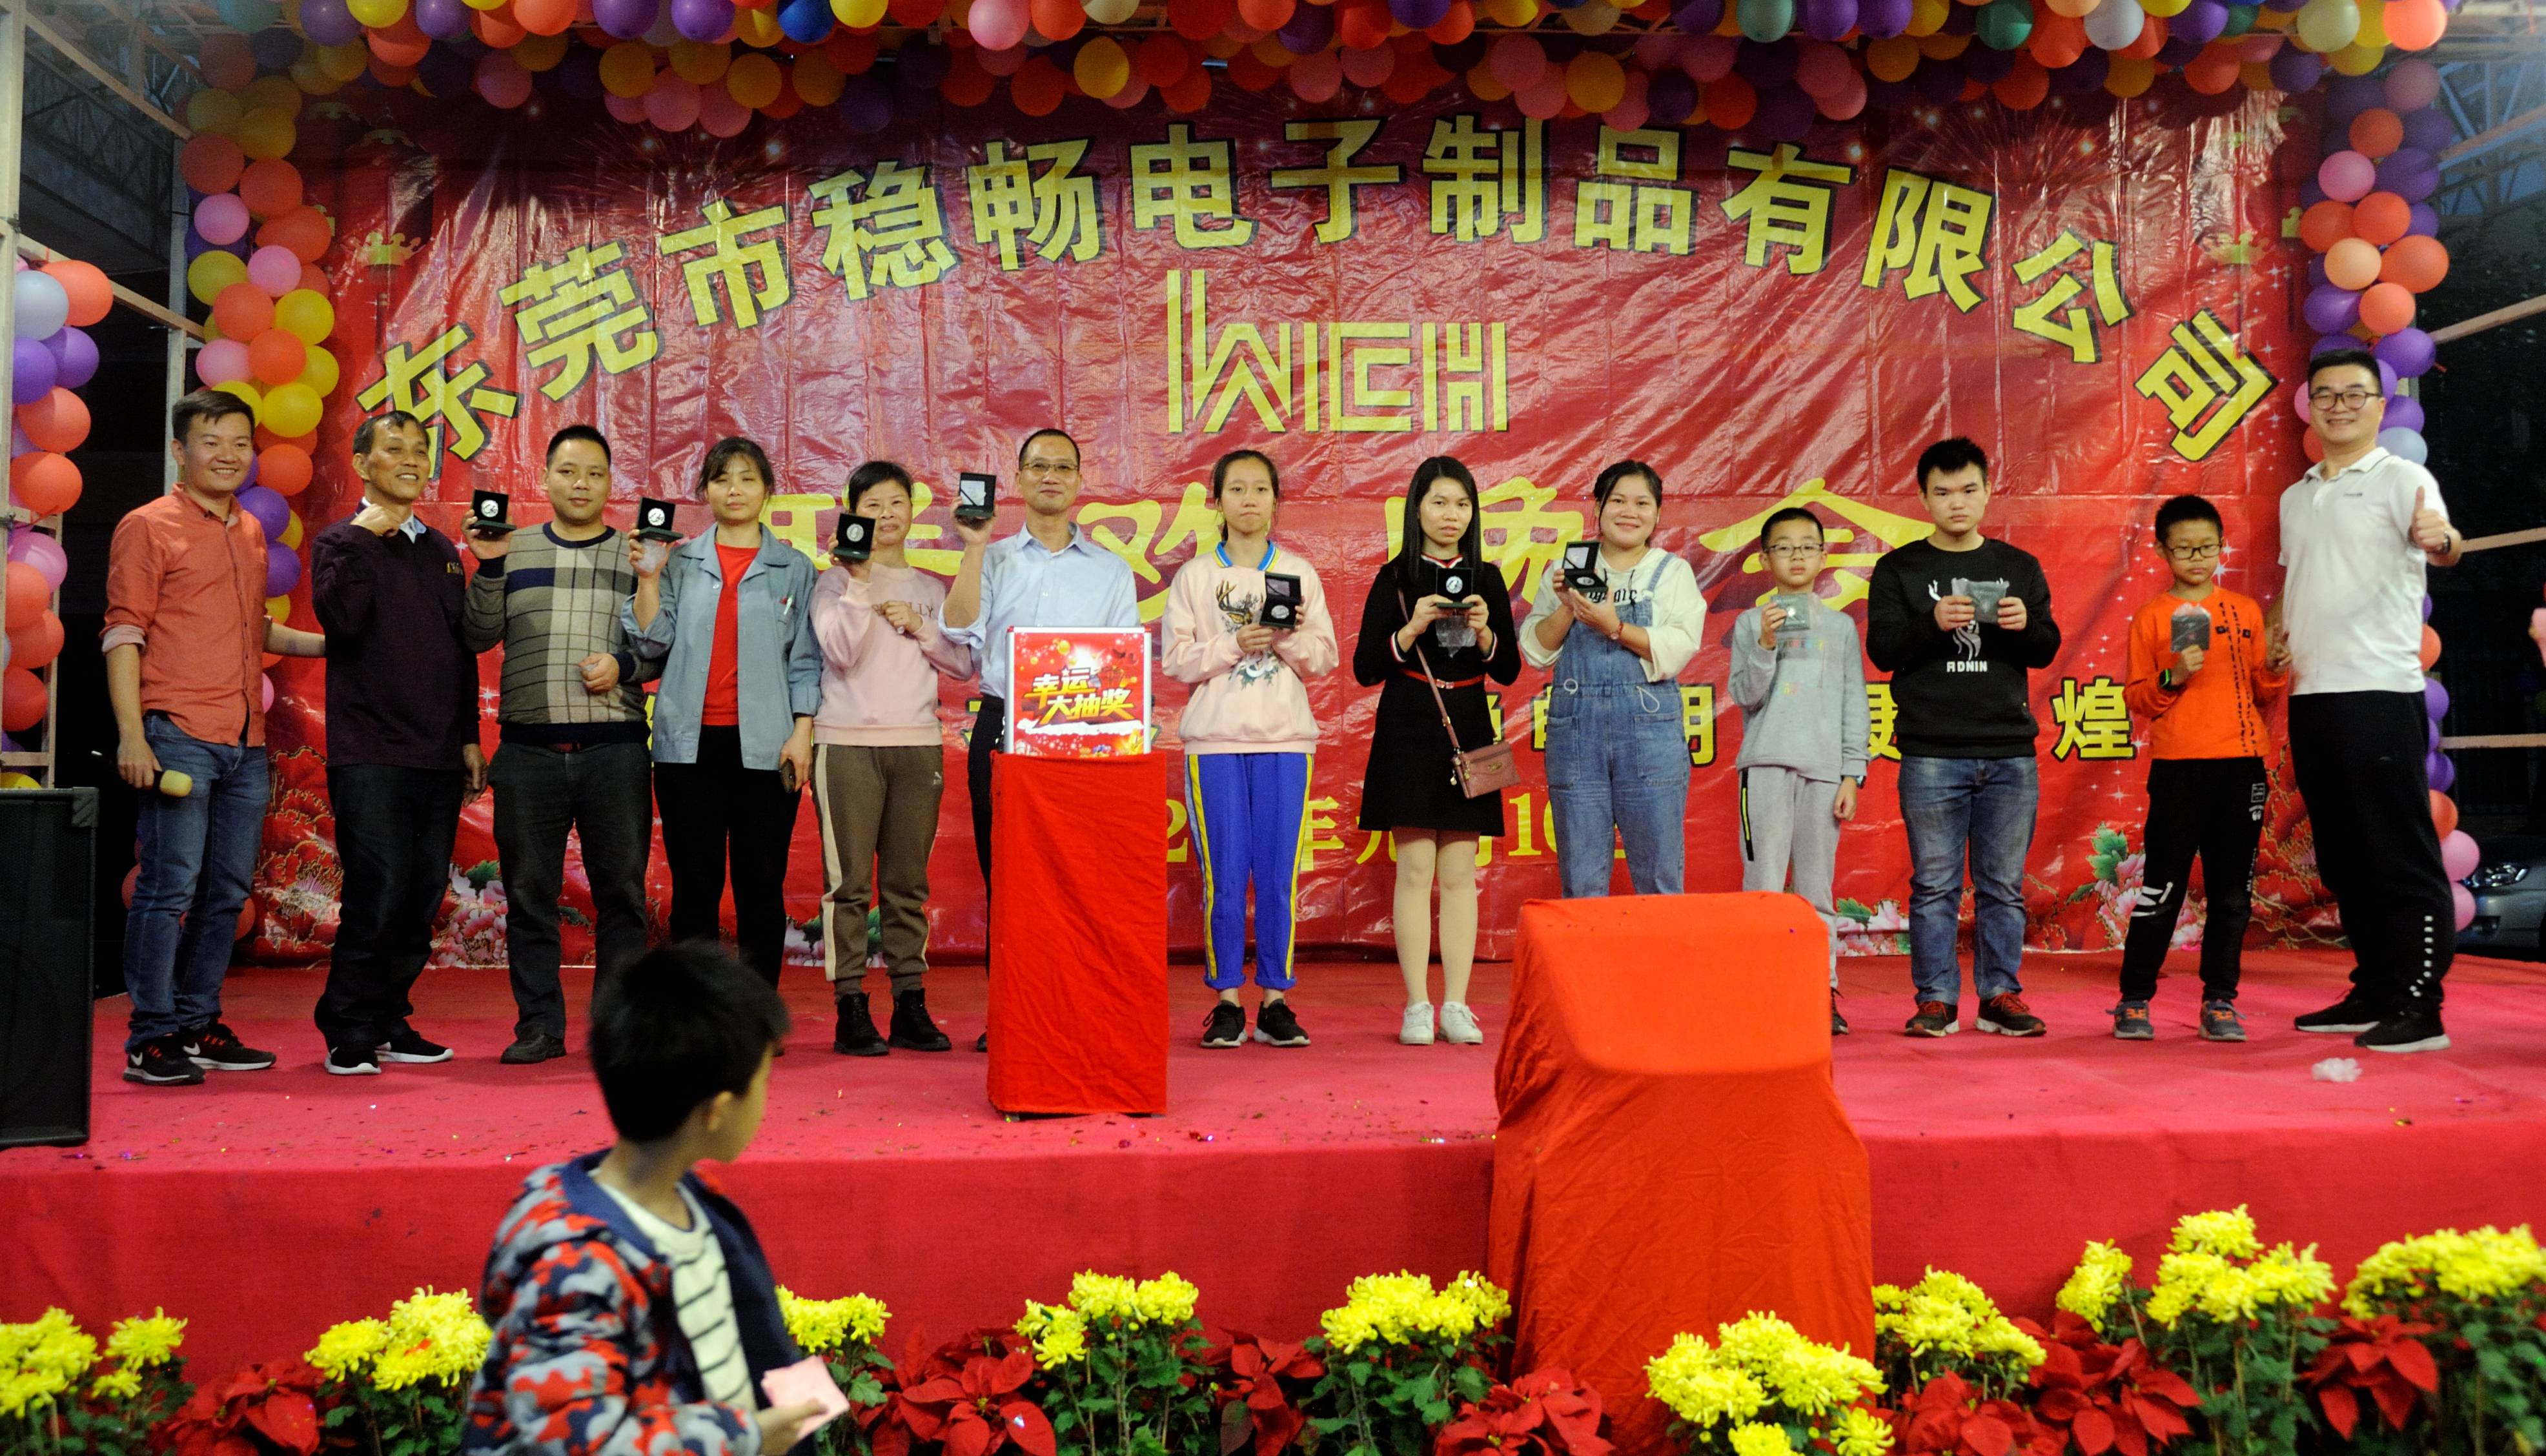 Wenchang Company hield een feest om het nieuwe jaar 2020 te vieren